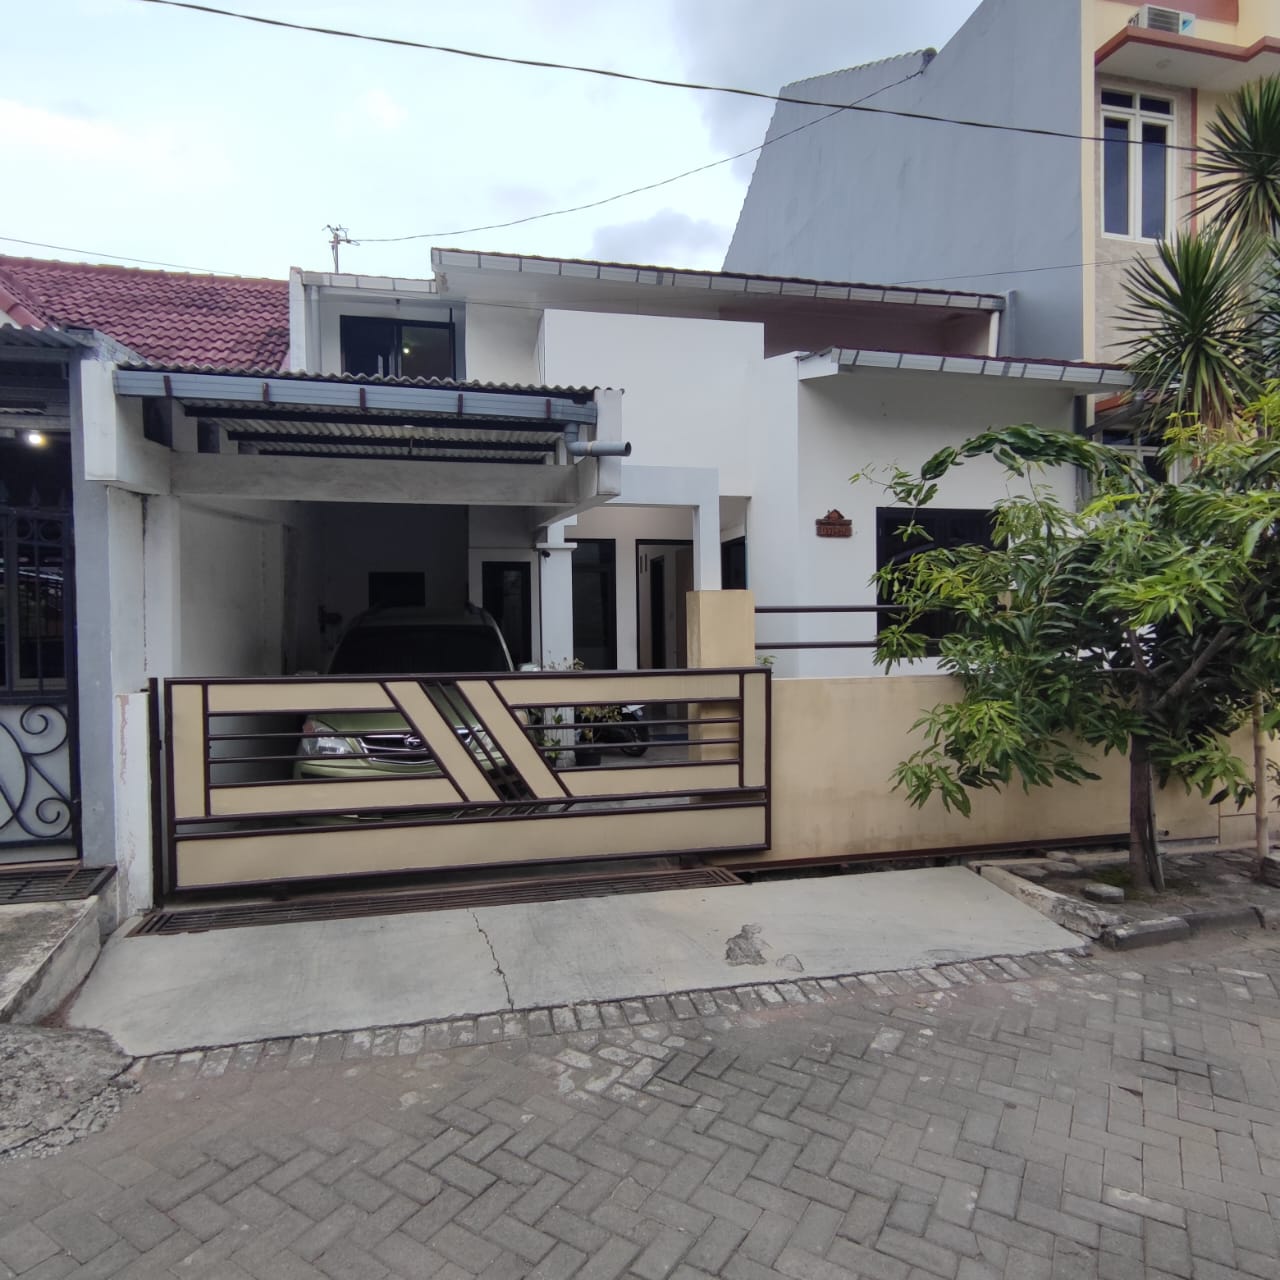 Disewakan Rumah Tinggal di Semarang Kota